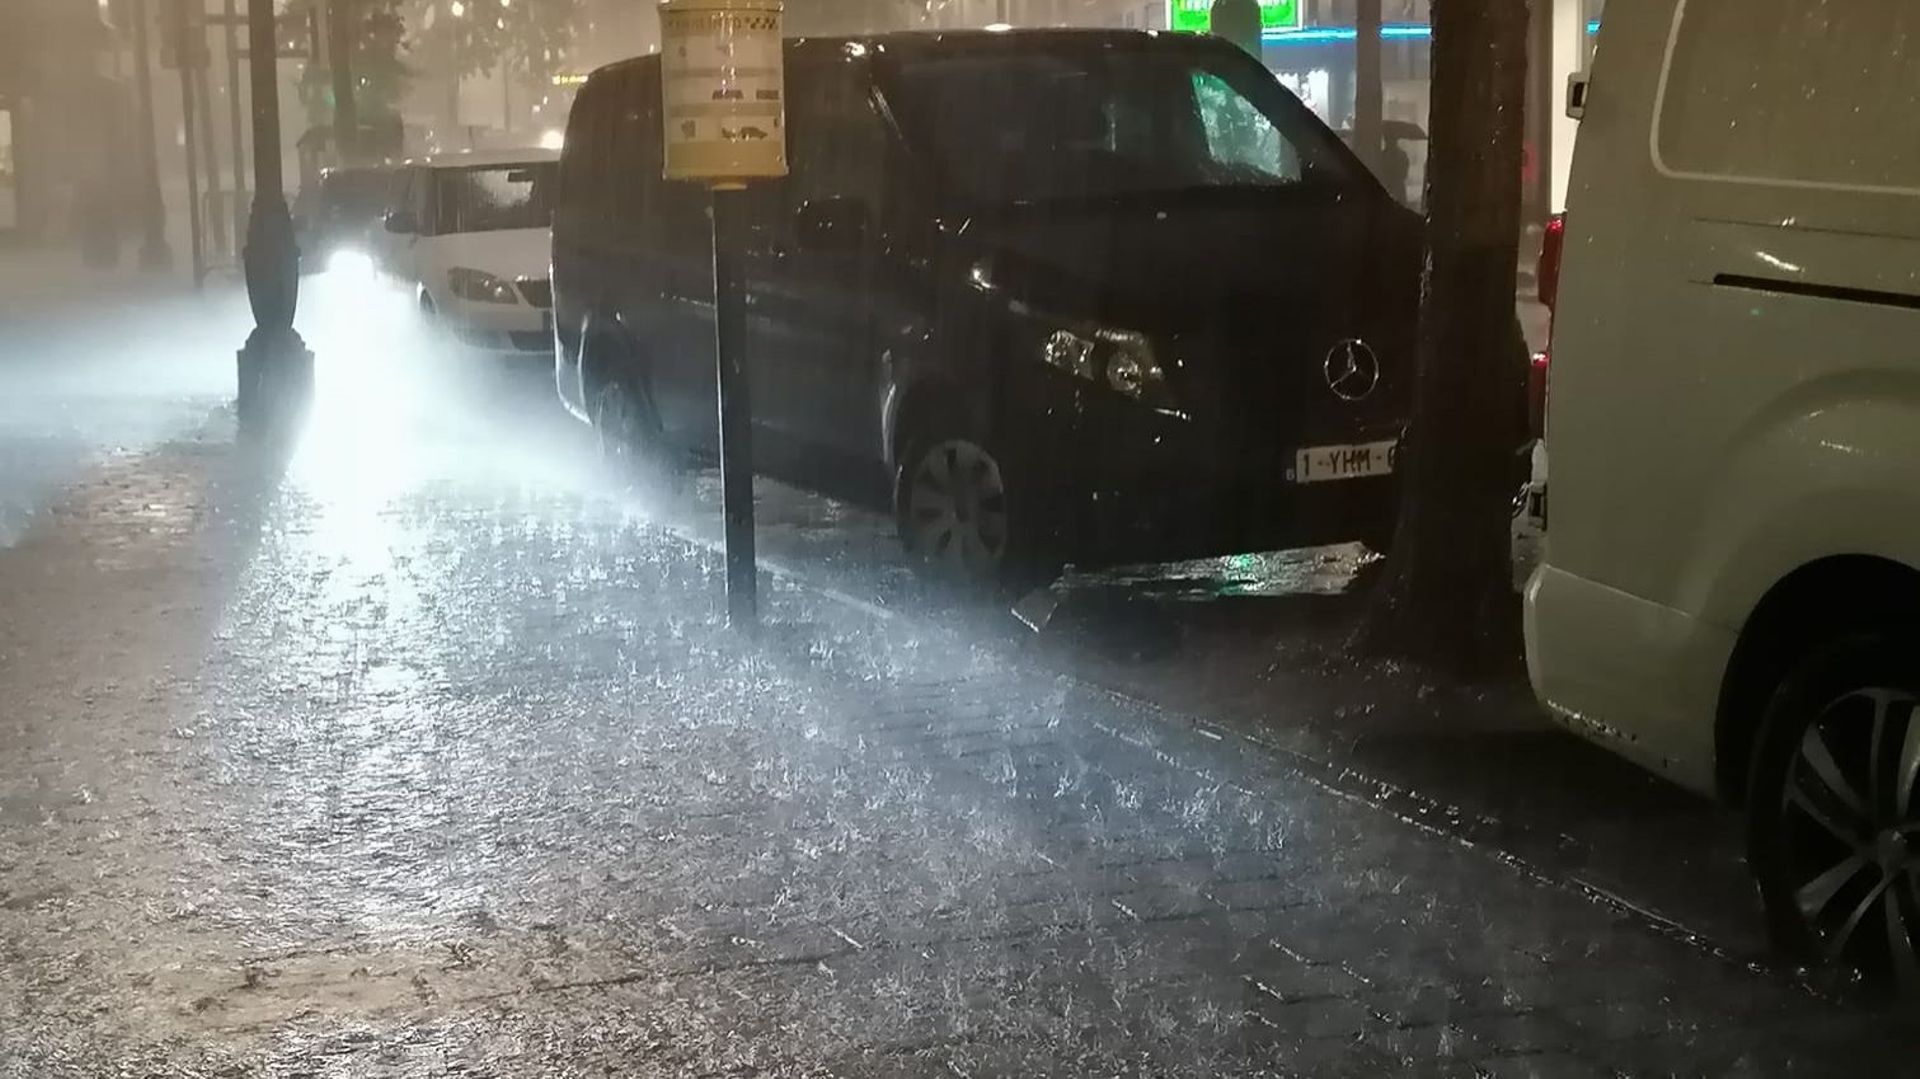 Bruxelles sous la pluie